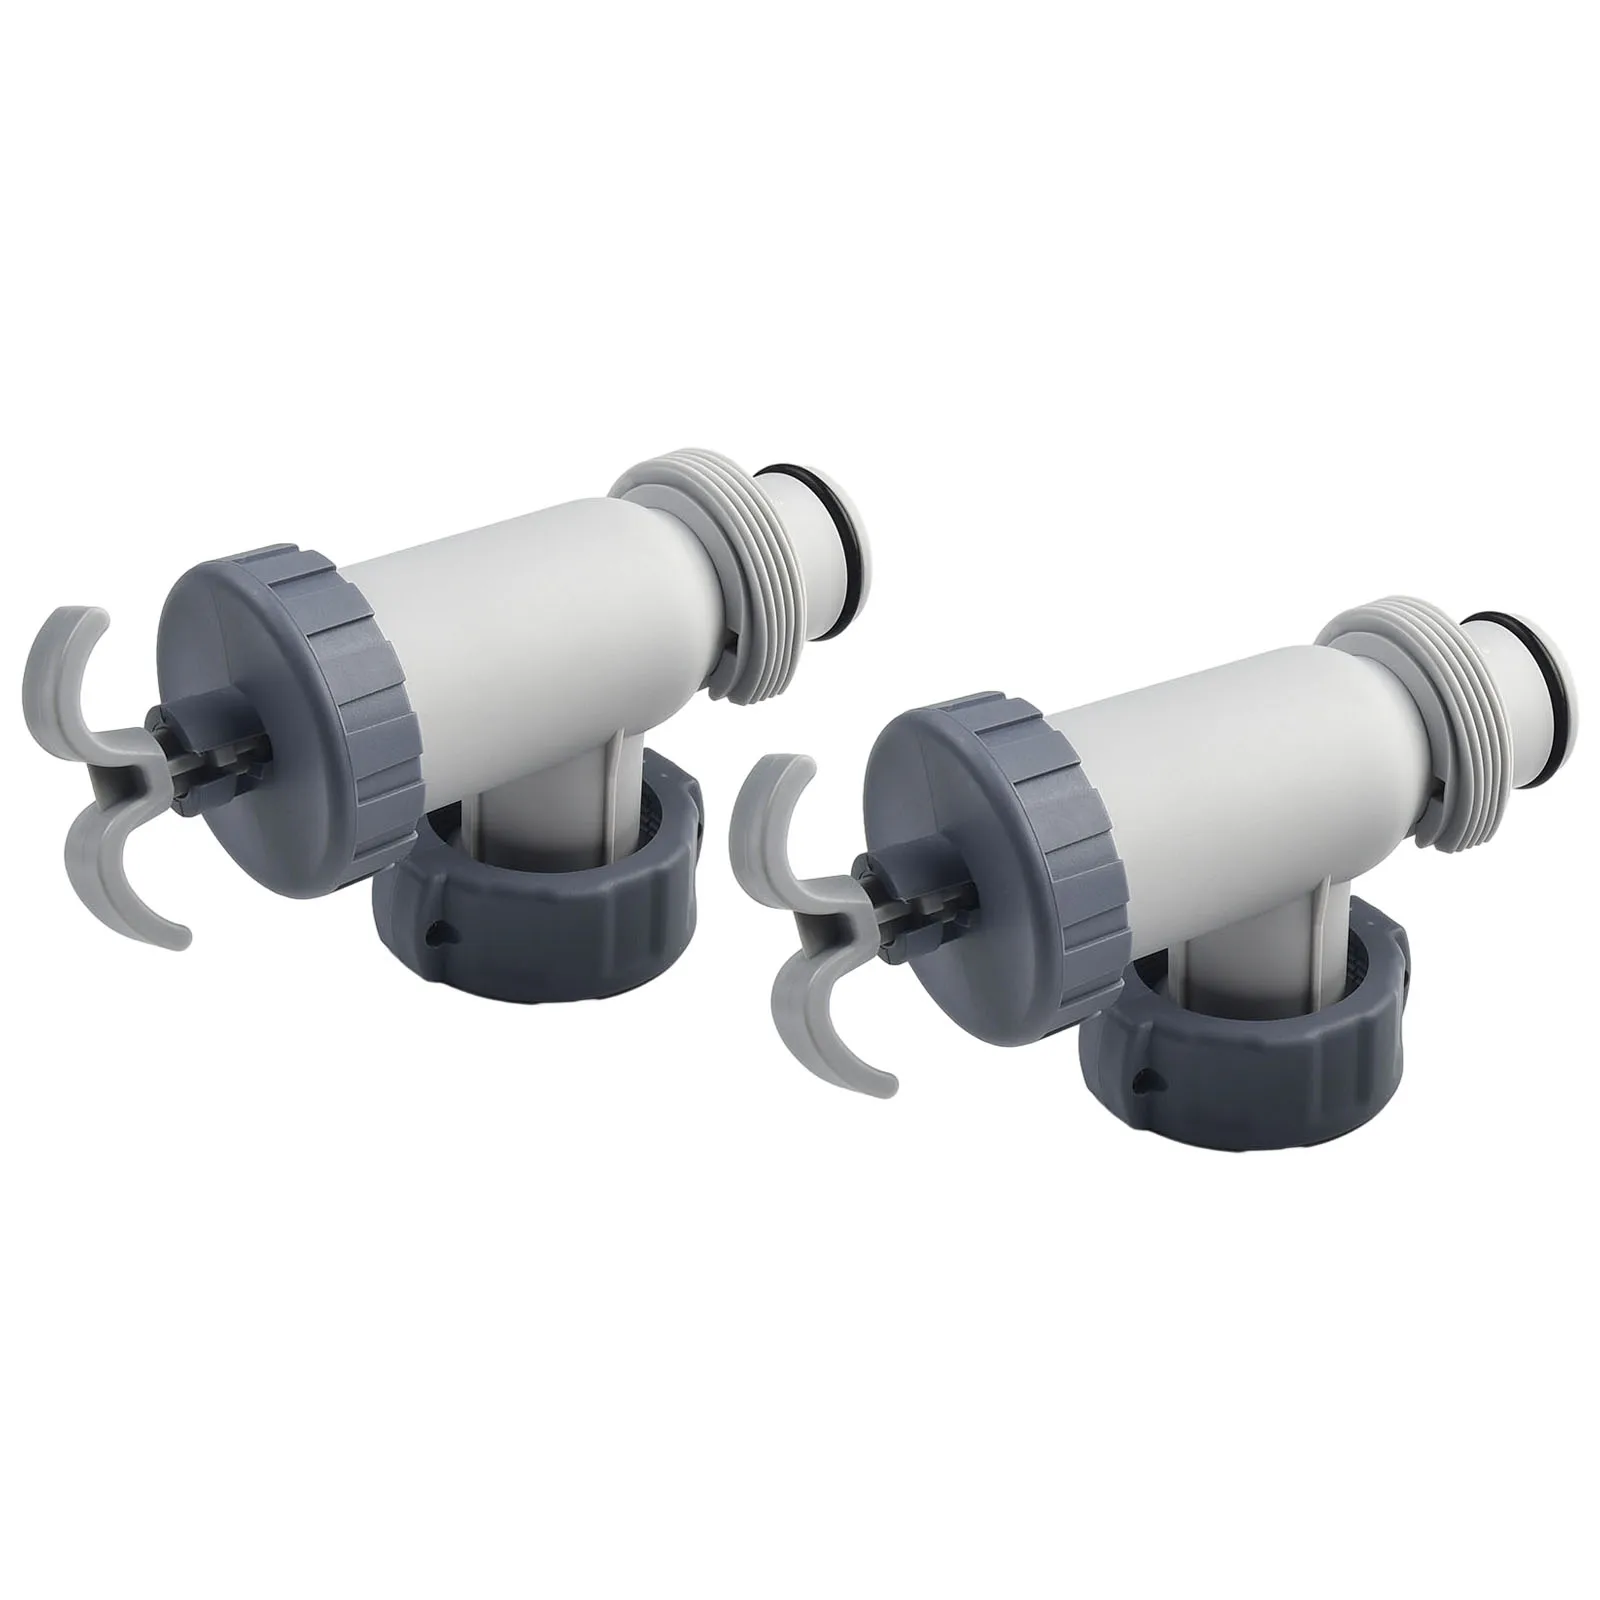 

Уплотнительные прокладки для 2 поршневых клапанов, гайки и шланговые адаптеры для бассейнов Intex выше земли поддерживают ваш бассейн в максимальном состоянии